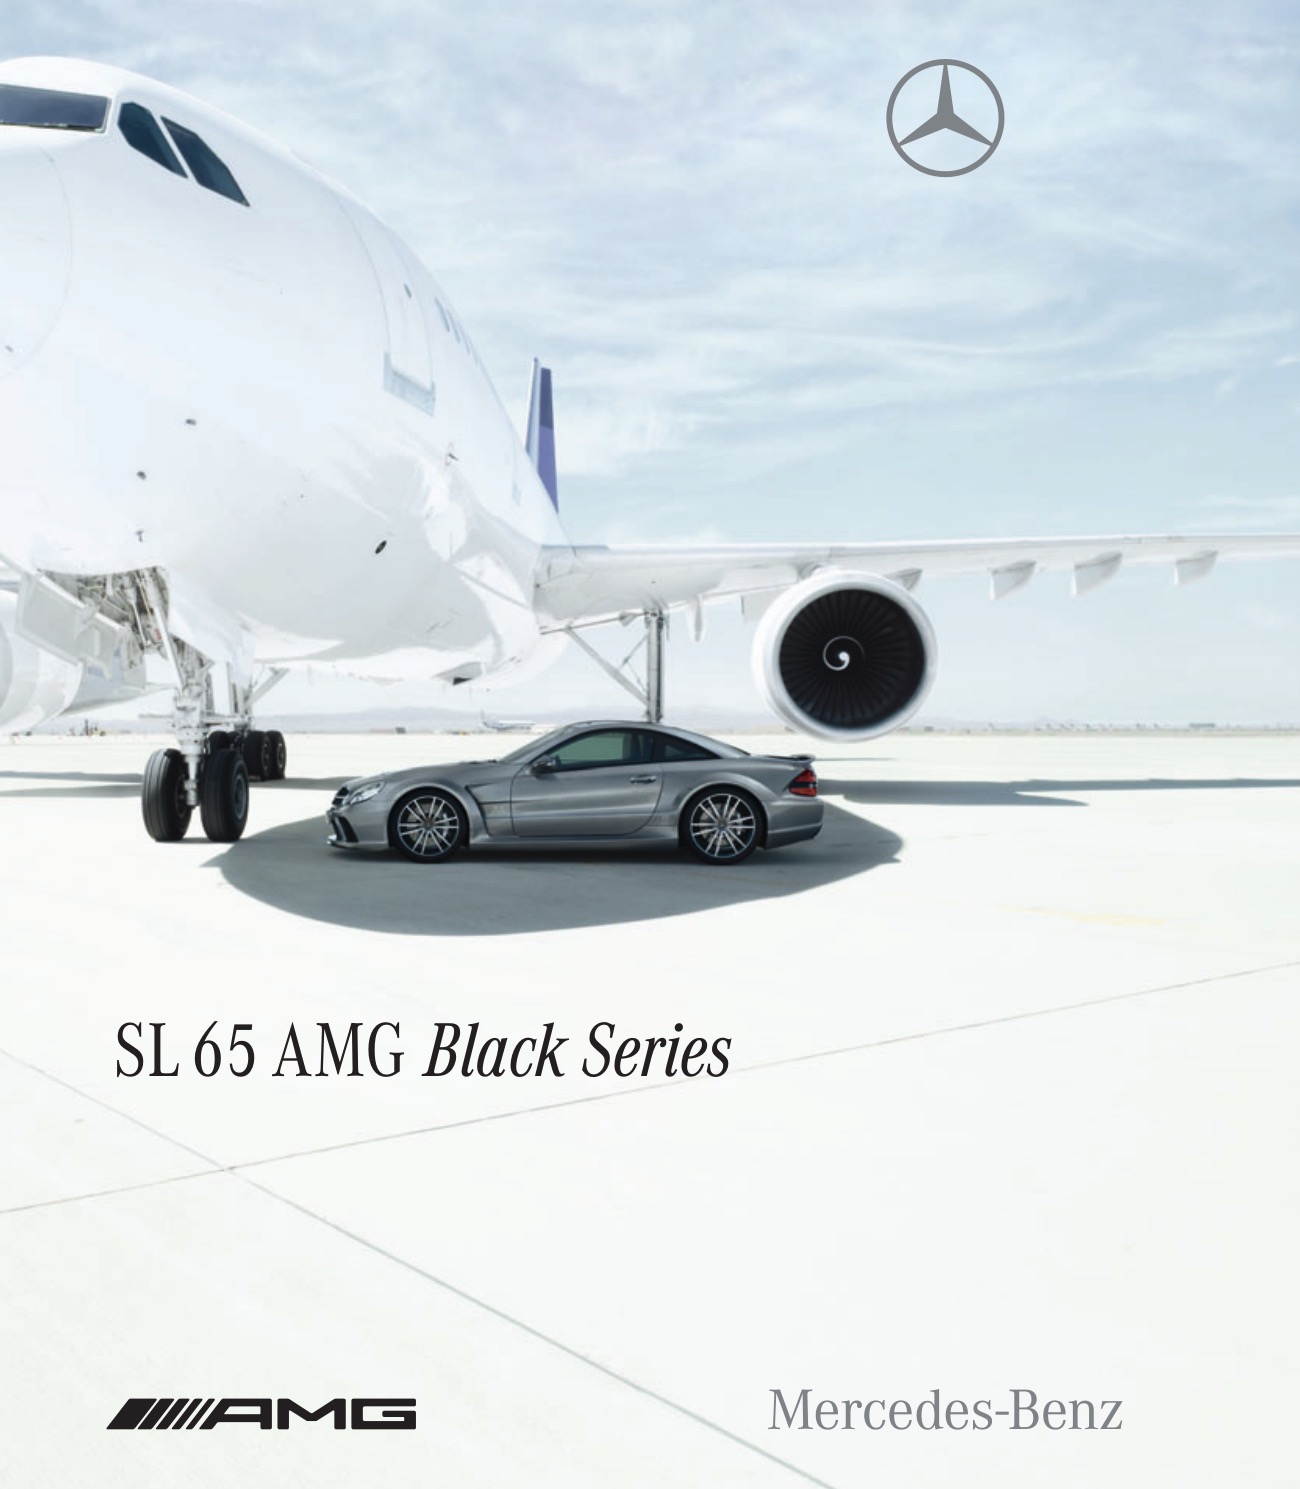 2009 Mercedes-Benz SL-Class AMG Brochure